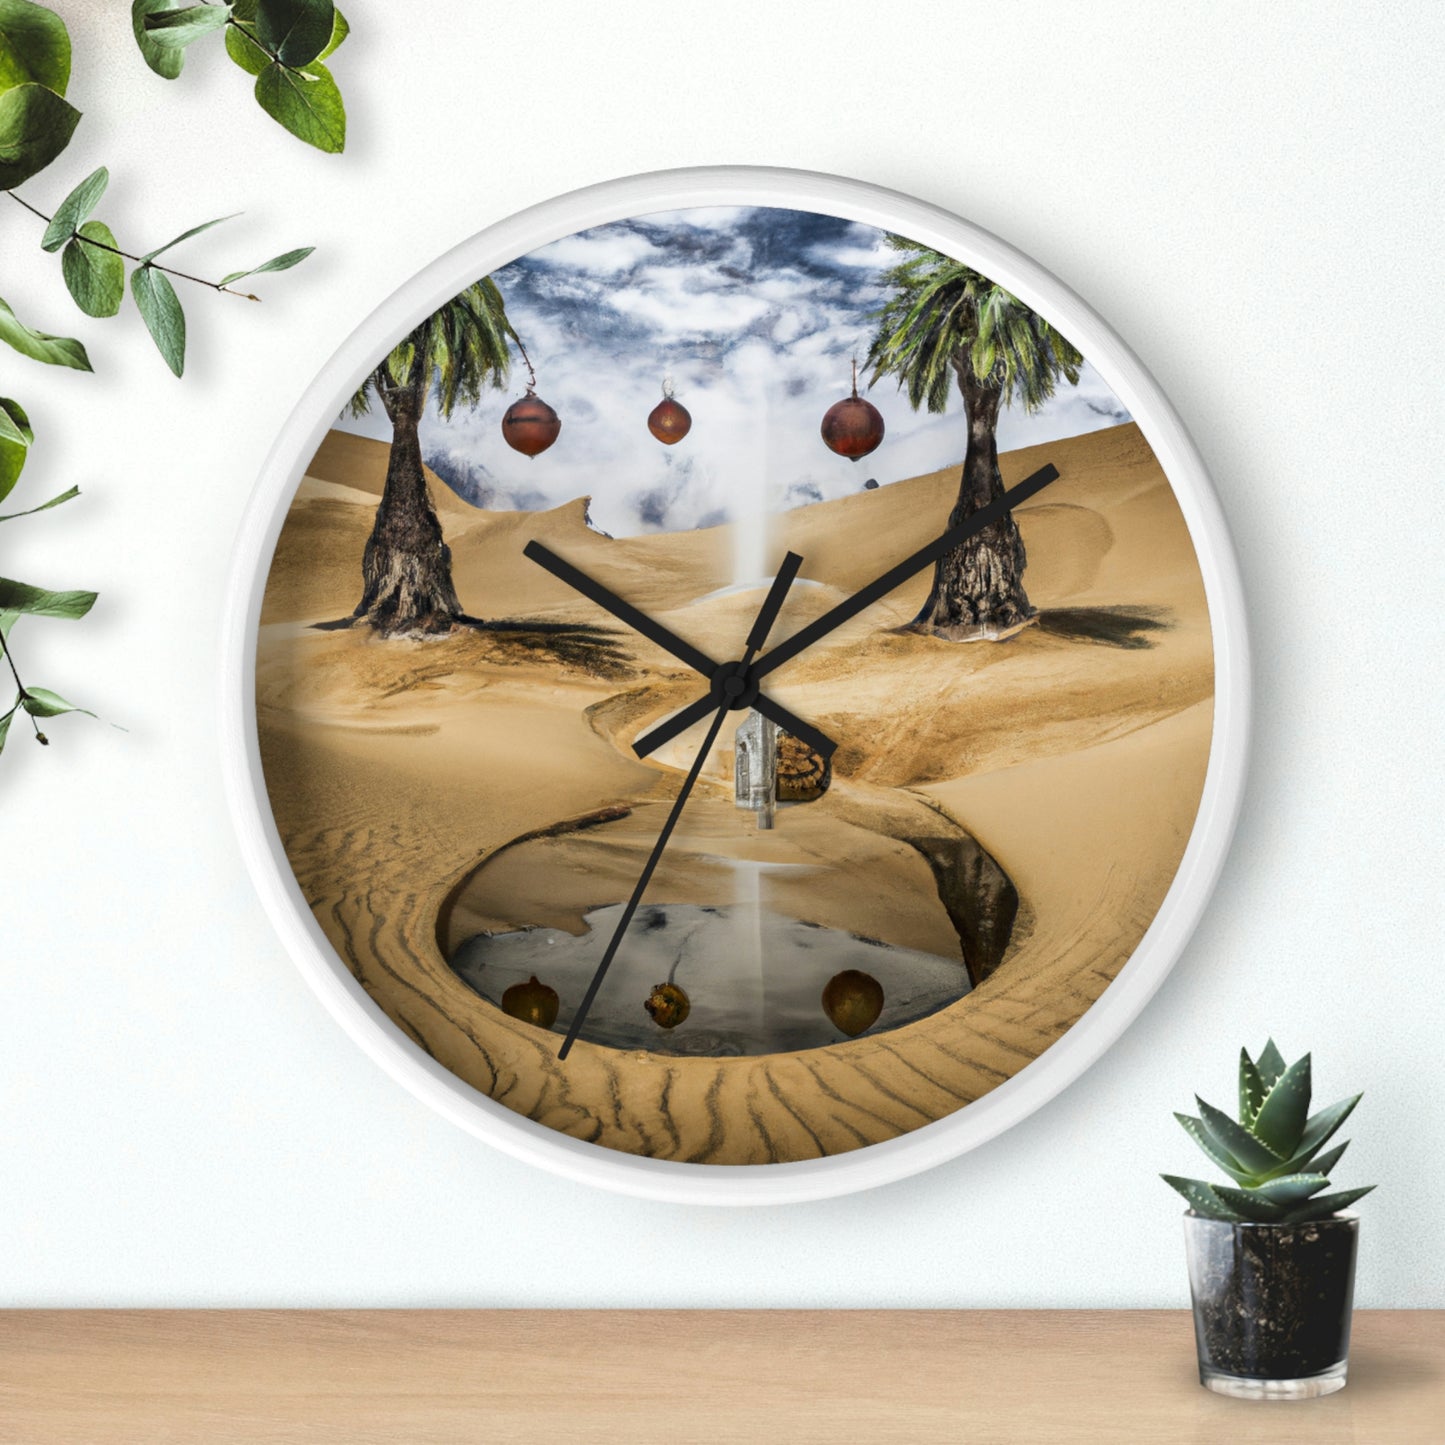 El espejismo de las arenas del desierto - El reloj de pared alienígena